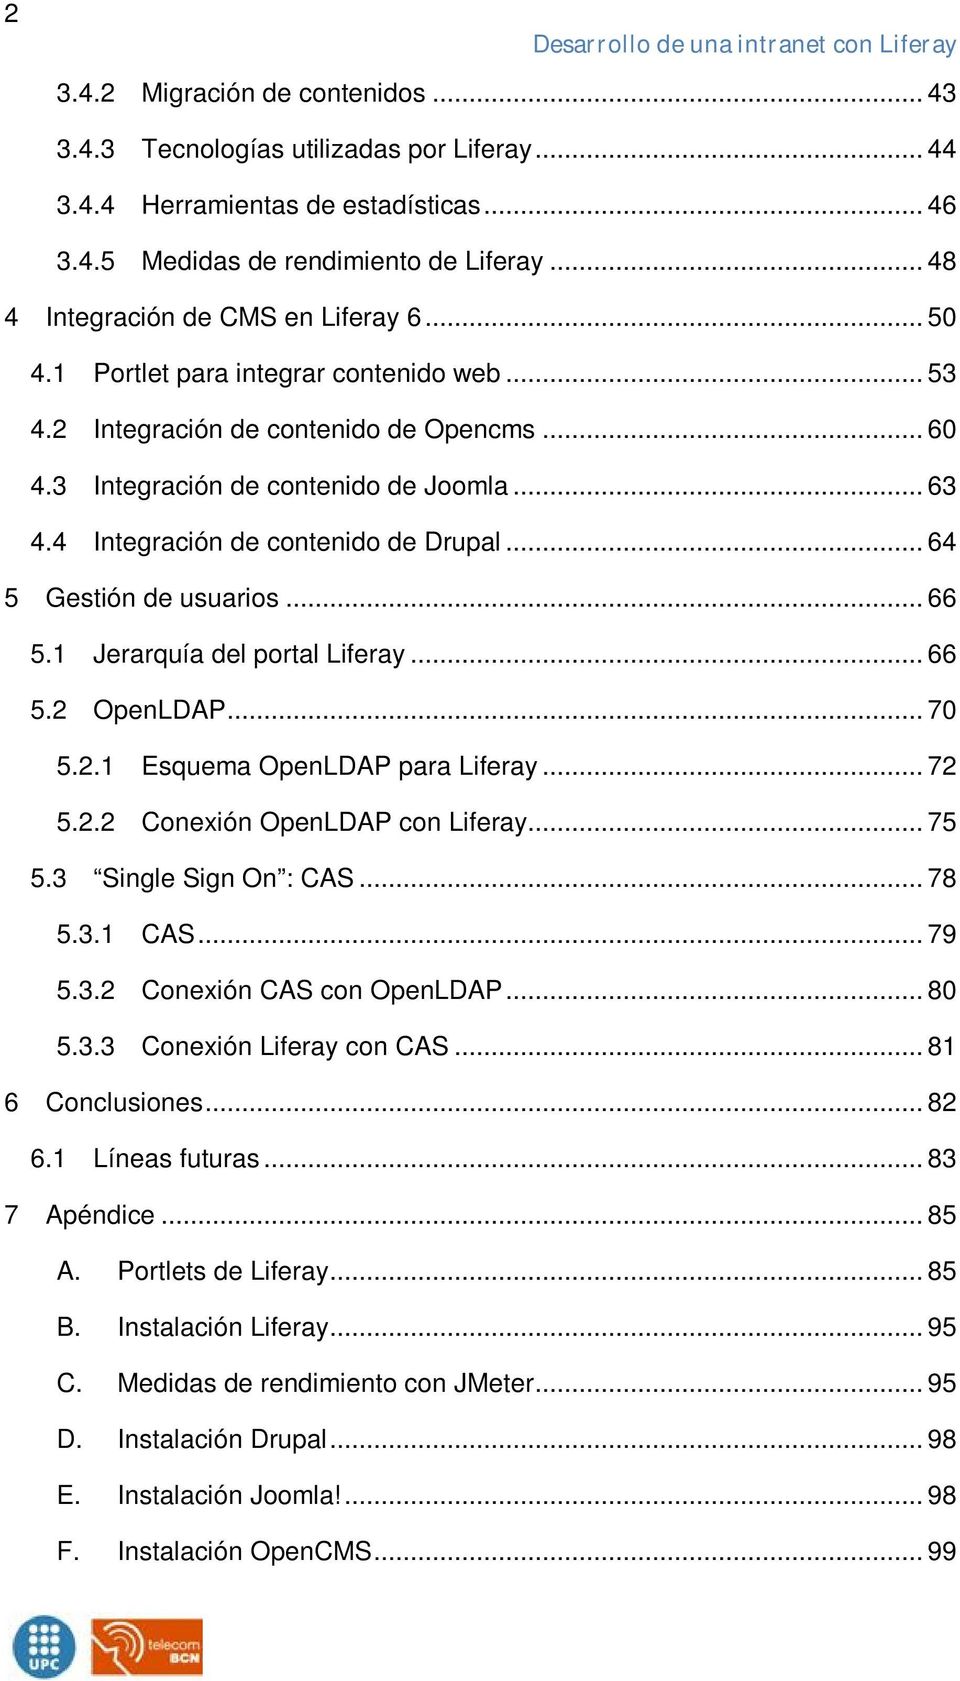 4 Integración de contenido de Drupal... 64 5 Gestión de usuarios... 66 5.1 Jerarquía del portal Liferay... 66 5.2 OpenLDAP... 70 5.2.1 Esquema OpenLDAP para Liferay... 72 5.2.2 Conexión OpenLDAP con Liferay.